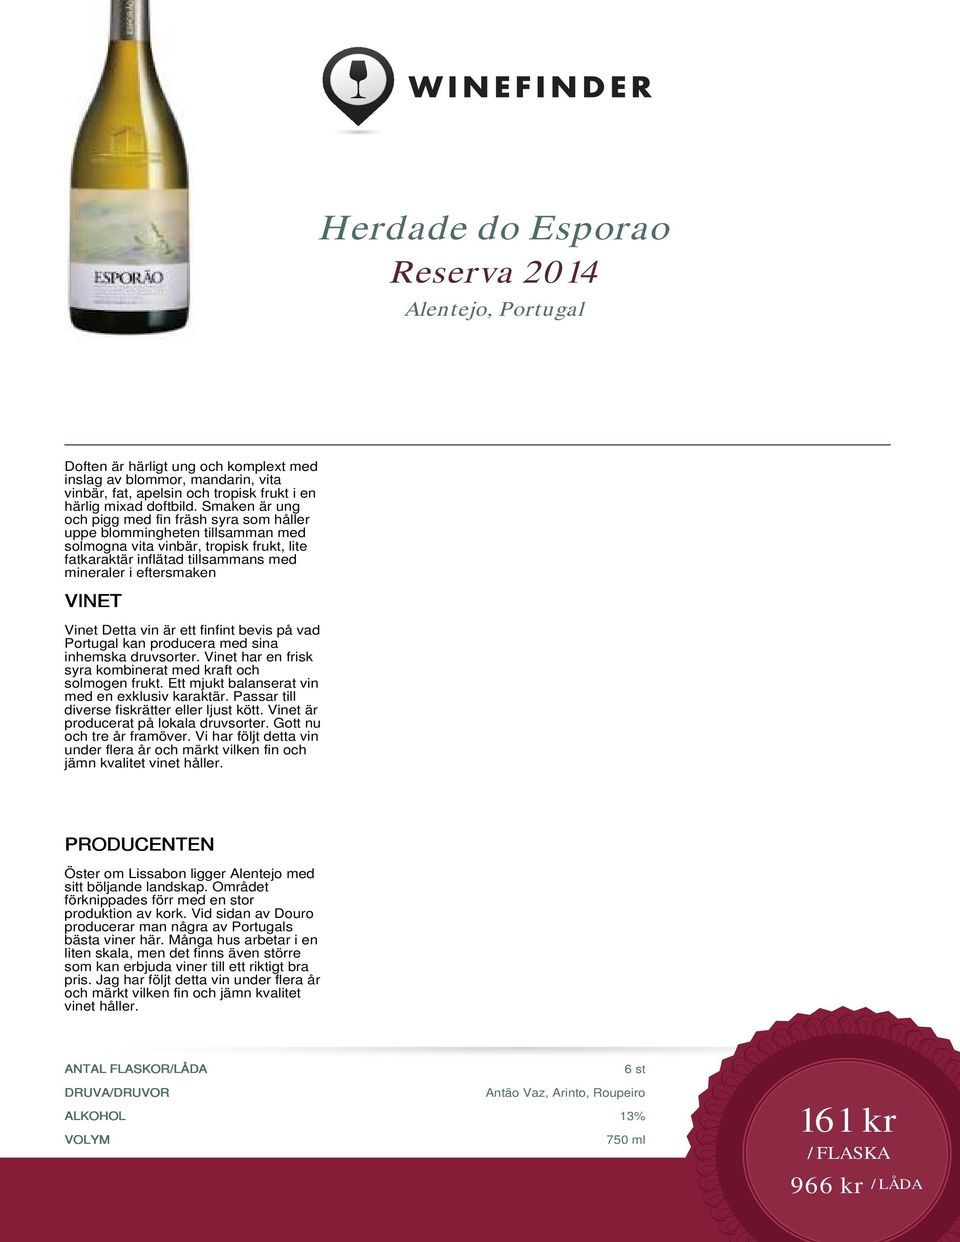 Detta vin är ett finfint bevis på vad Portugal kan producera med sina inhemska druvsorter. Vinet har en frisk syra kombinerat med kraft och solmogen frukt.